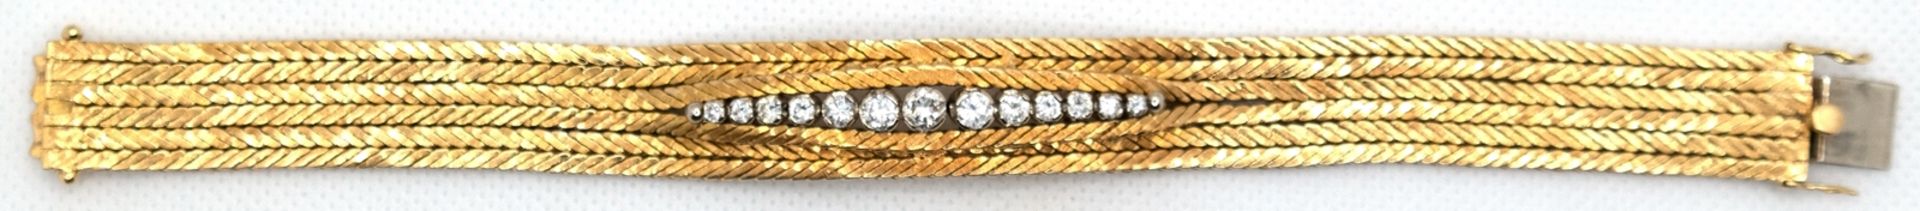 Brillant-Armband, 750er GG, in Reihe besetzt mit 13 Brillanten vsi, von zus. ca. 1,4 ct., in Krappe